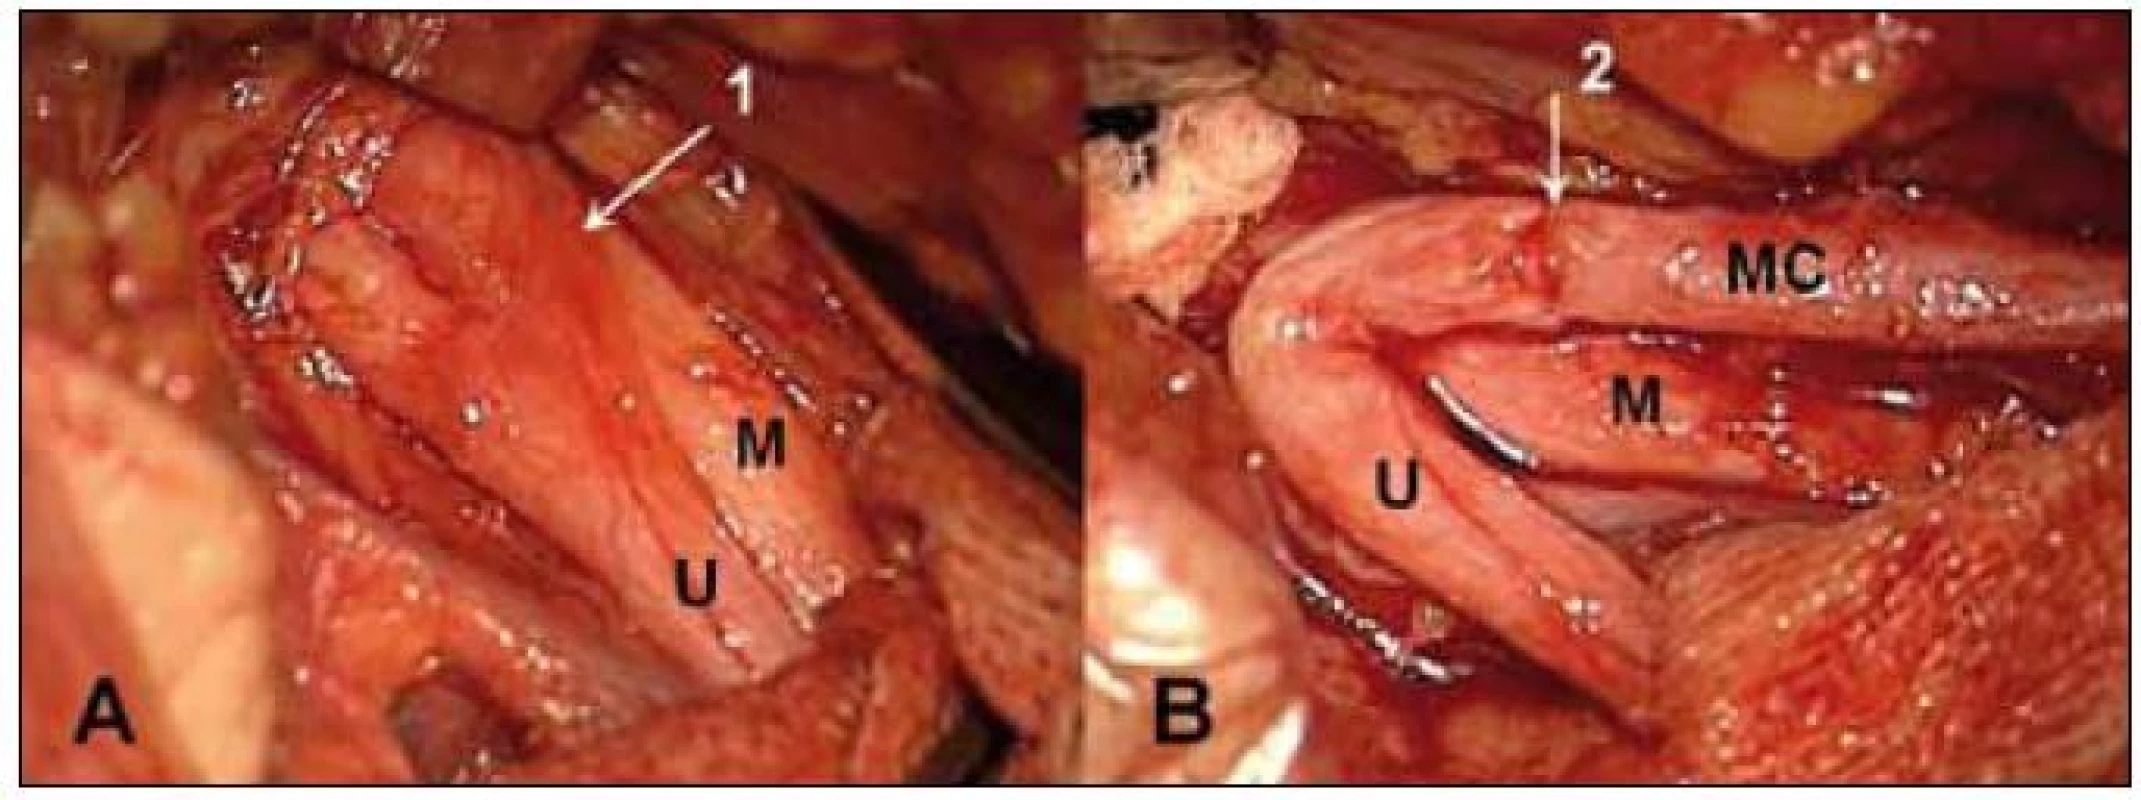 Sutura n. musculocutaneus (MC) na kořen C5 pomocí vaskularizovaného štěpu z n. ulnaris (U) při avulzi dolních kořenů. A – n. ulnaris s cévní stopkou (1), B – stav po sutuře štěpu na n. musculocutaneus (MC) (2), M – n. medianus.